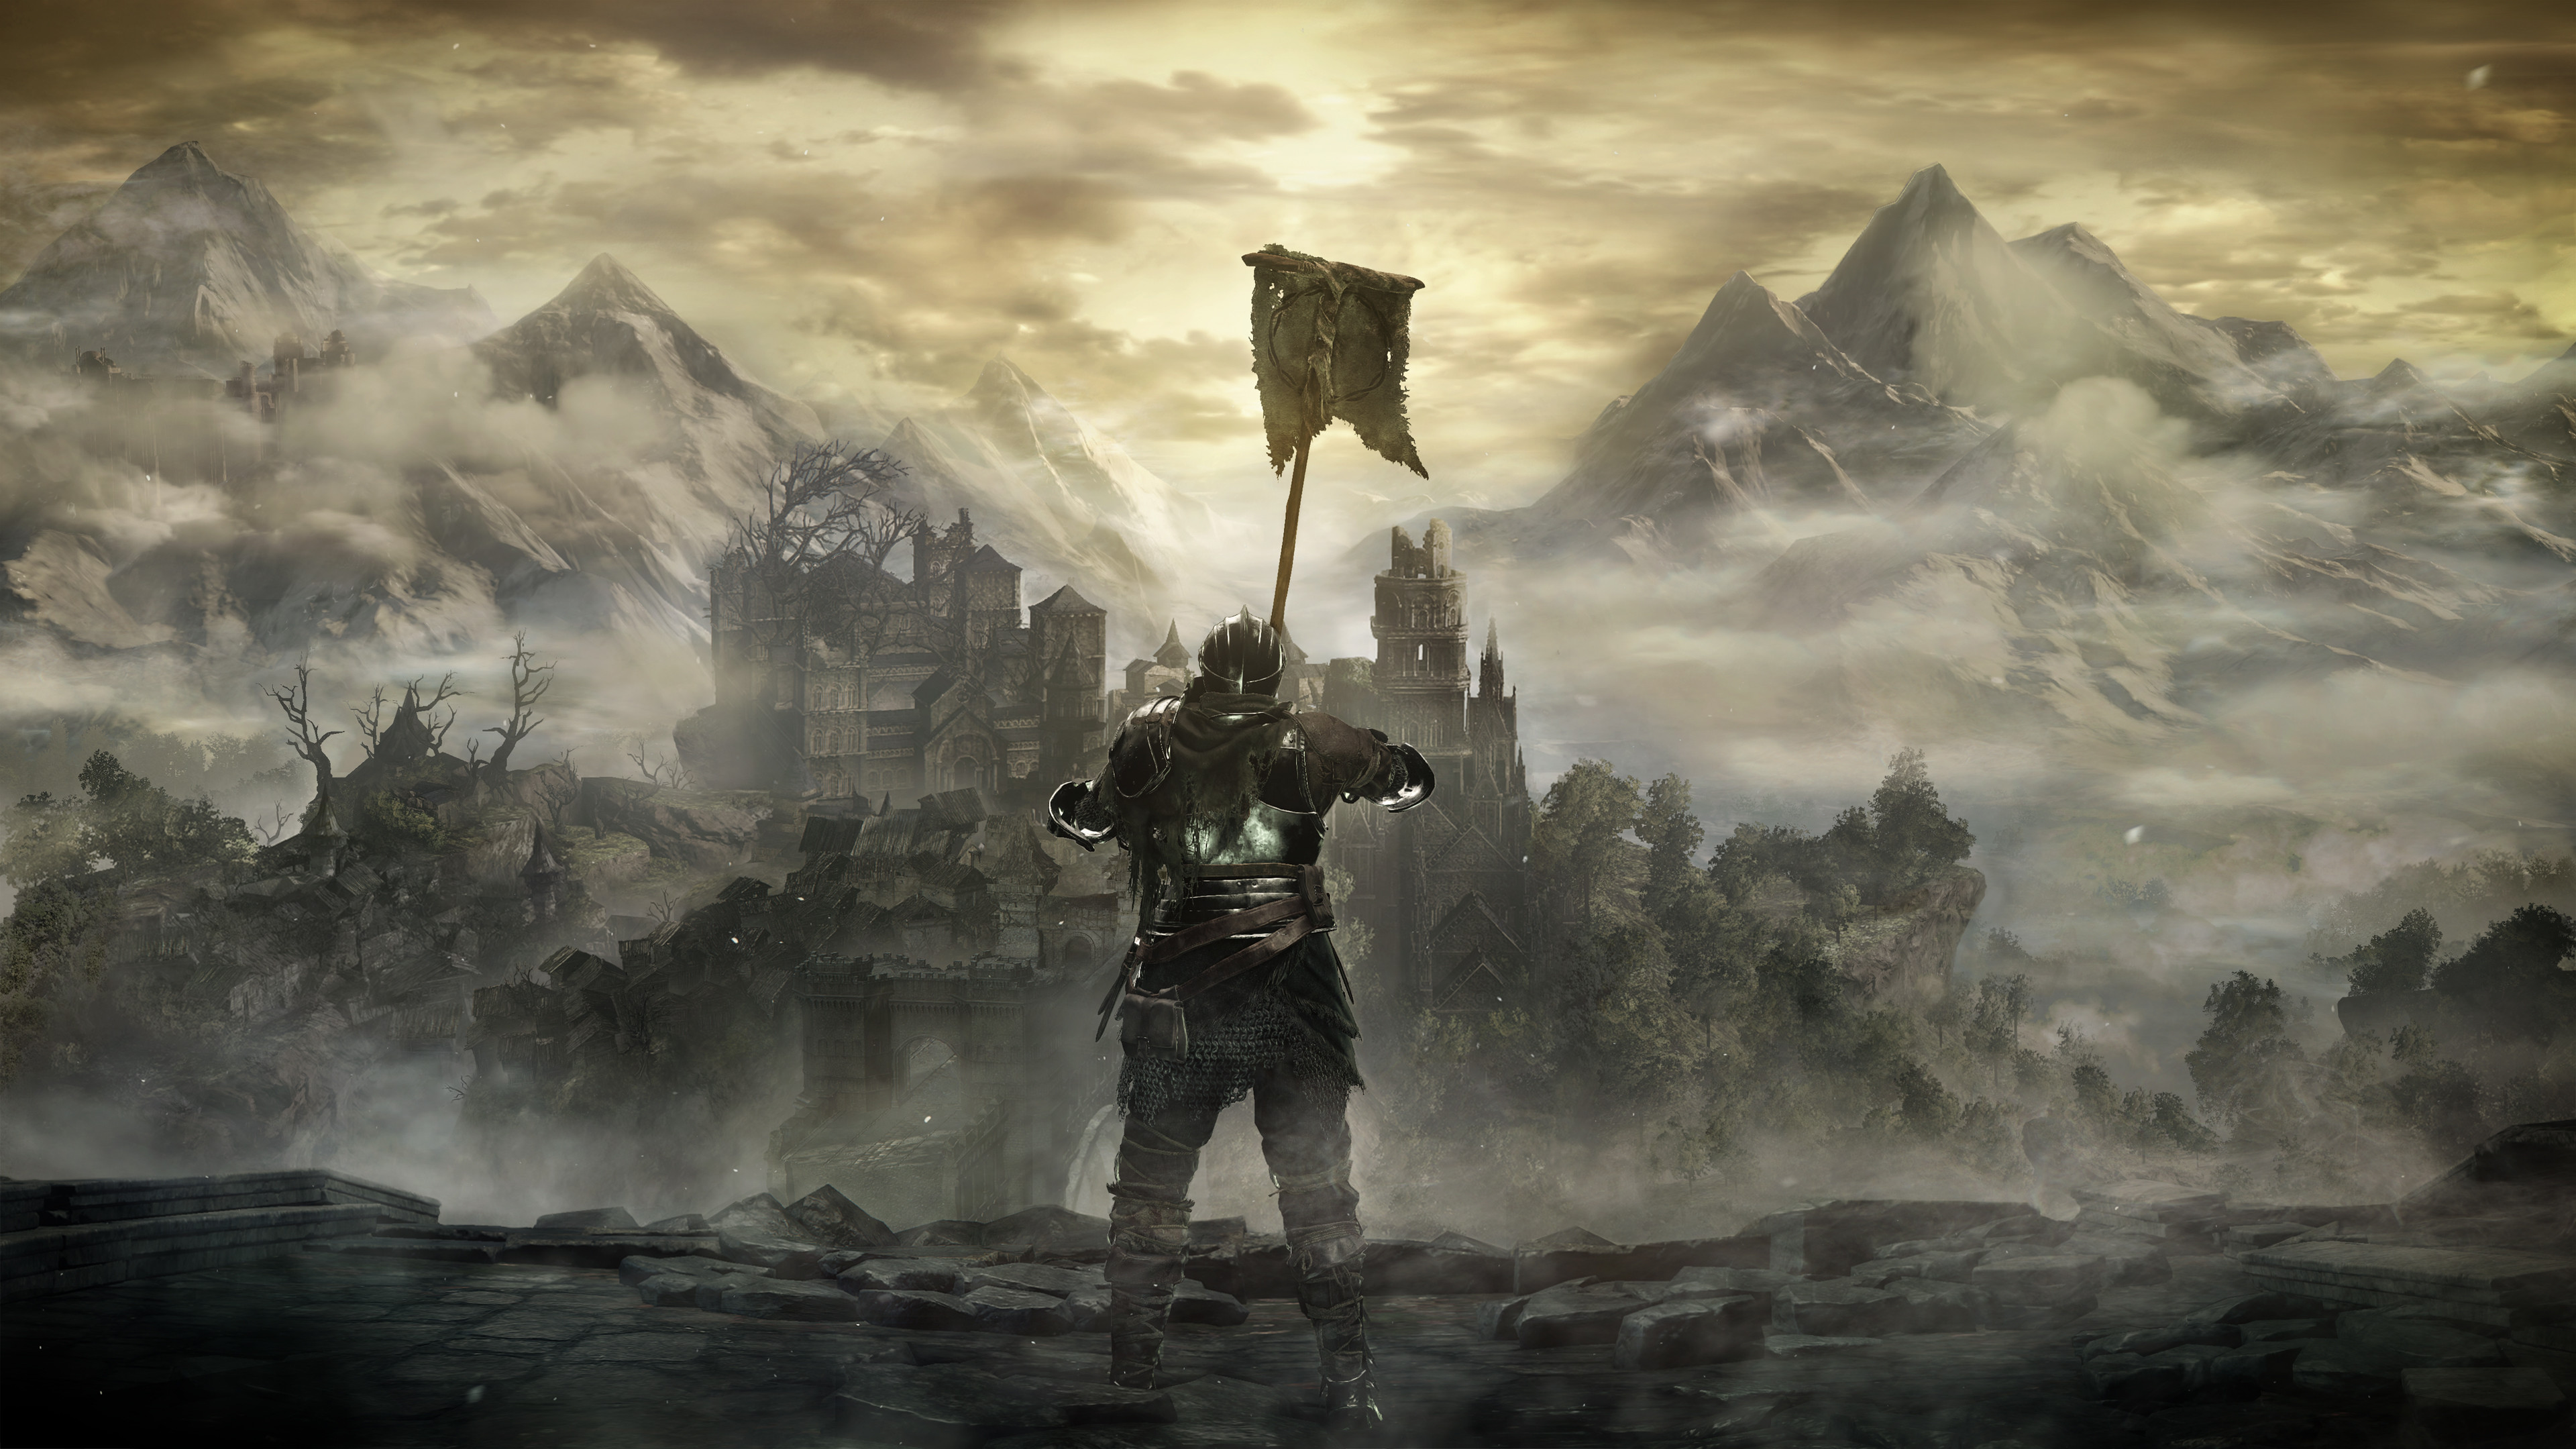 3840x2160 Video Game - Dark Souls III Knight Armor Mountain Castle Landscape Wallpaper